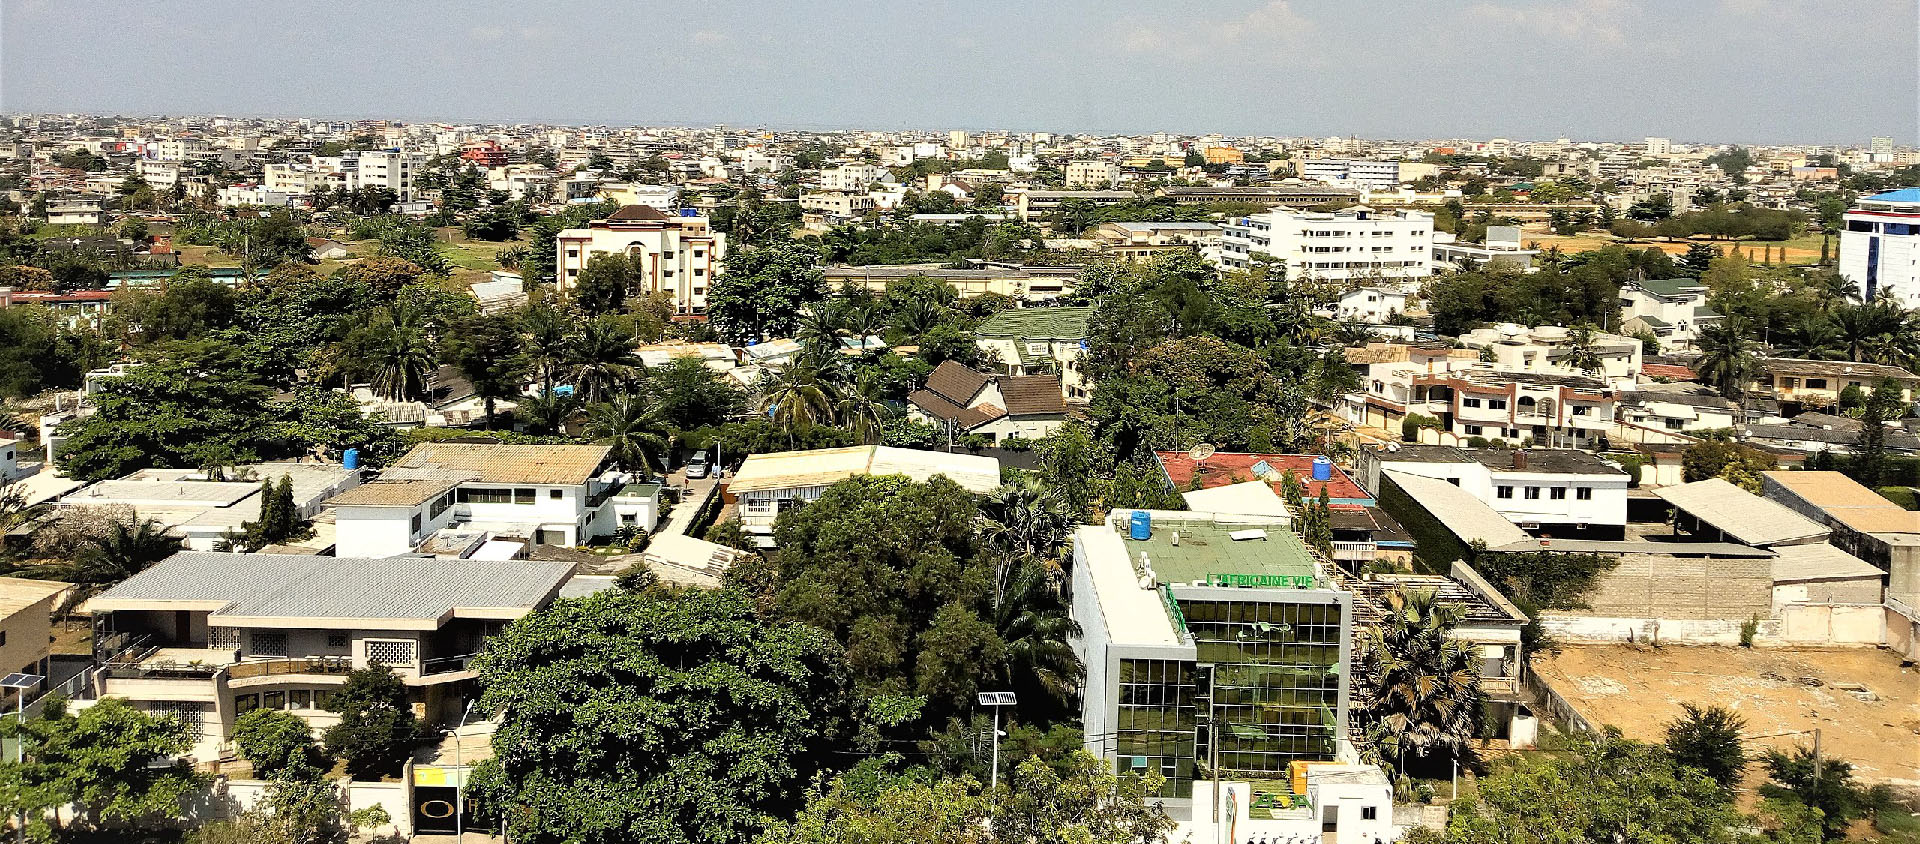 A Cotonou, et dans tout le Bénin, l'usage des cloches et haut-parleurs pour l'appel à la prière est désormais encadré par la loi | Wikipedia/CC BY-SA 4.0/Adoscam